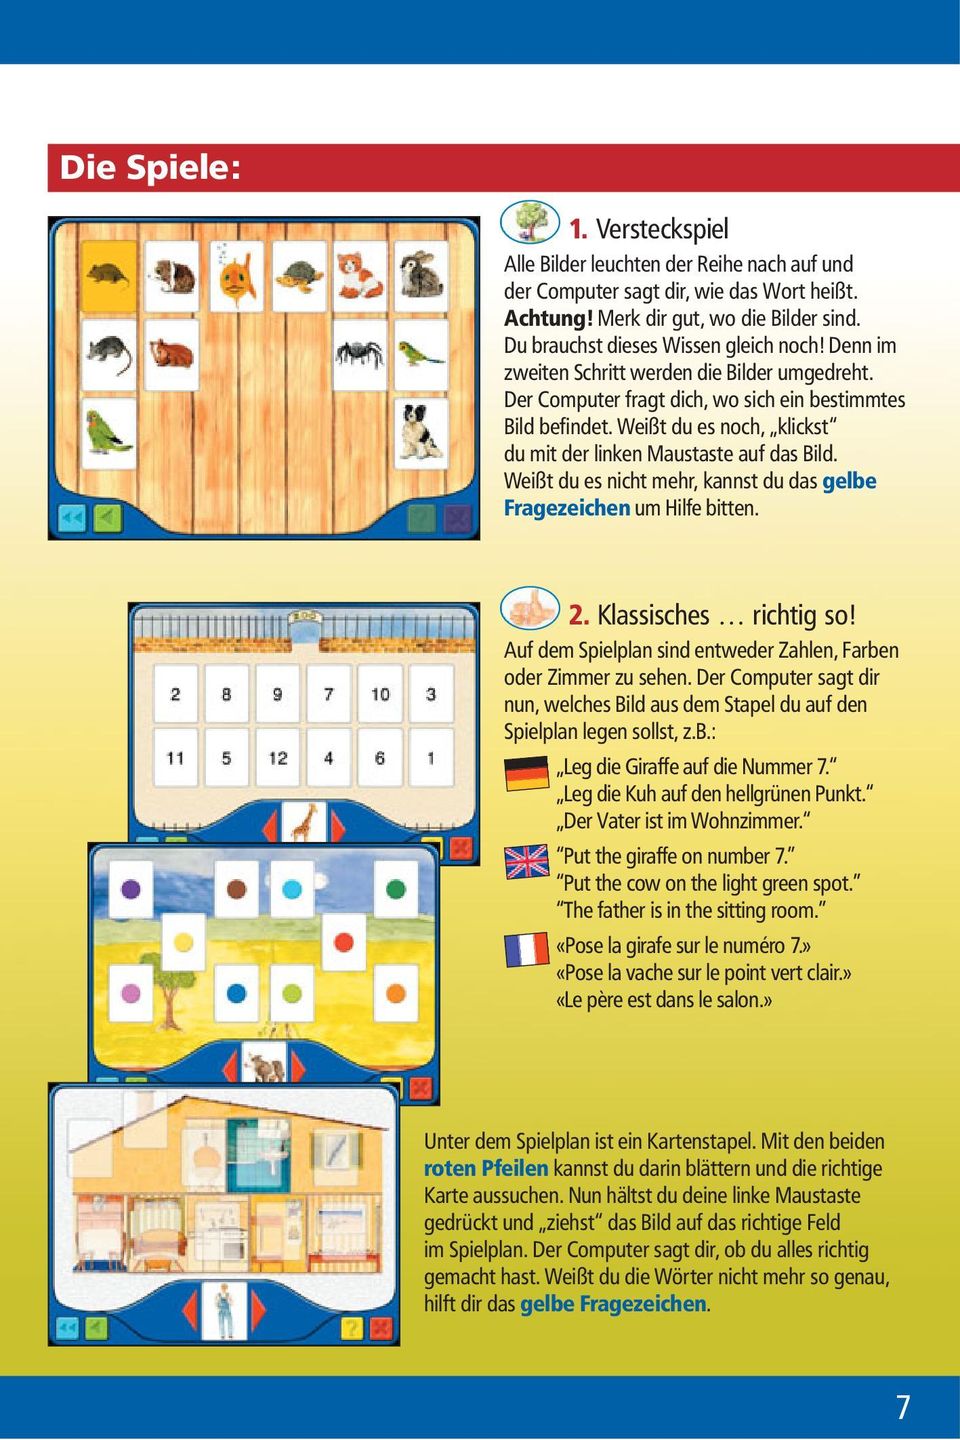 Weißt du es nicht mehr, kannst du das gelbe Fragezeichen um Hilfe bitten. 2. Klassisches richtig so! Auf dem Spielplan sind entweder Zahlen, Farben oder Zimmer zu sehen.